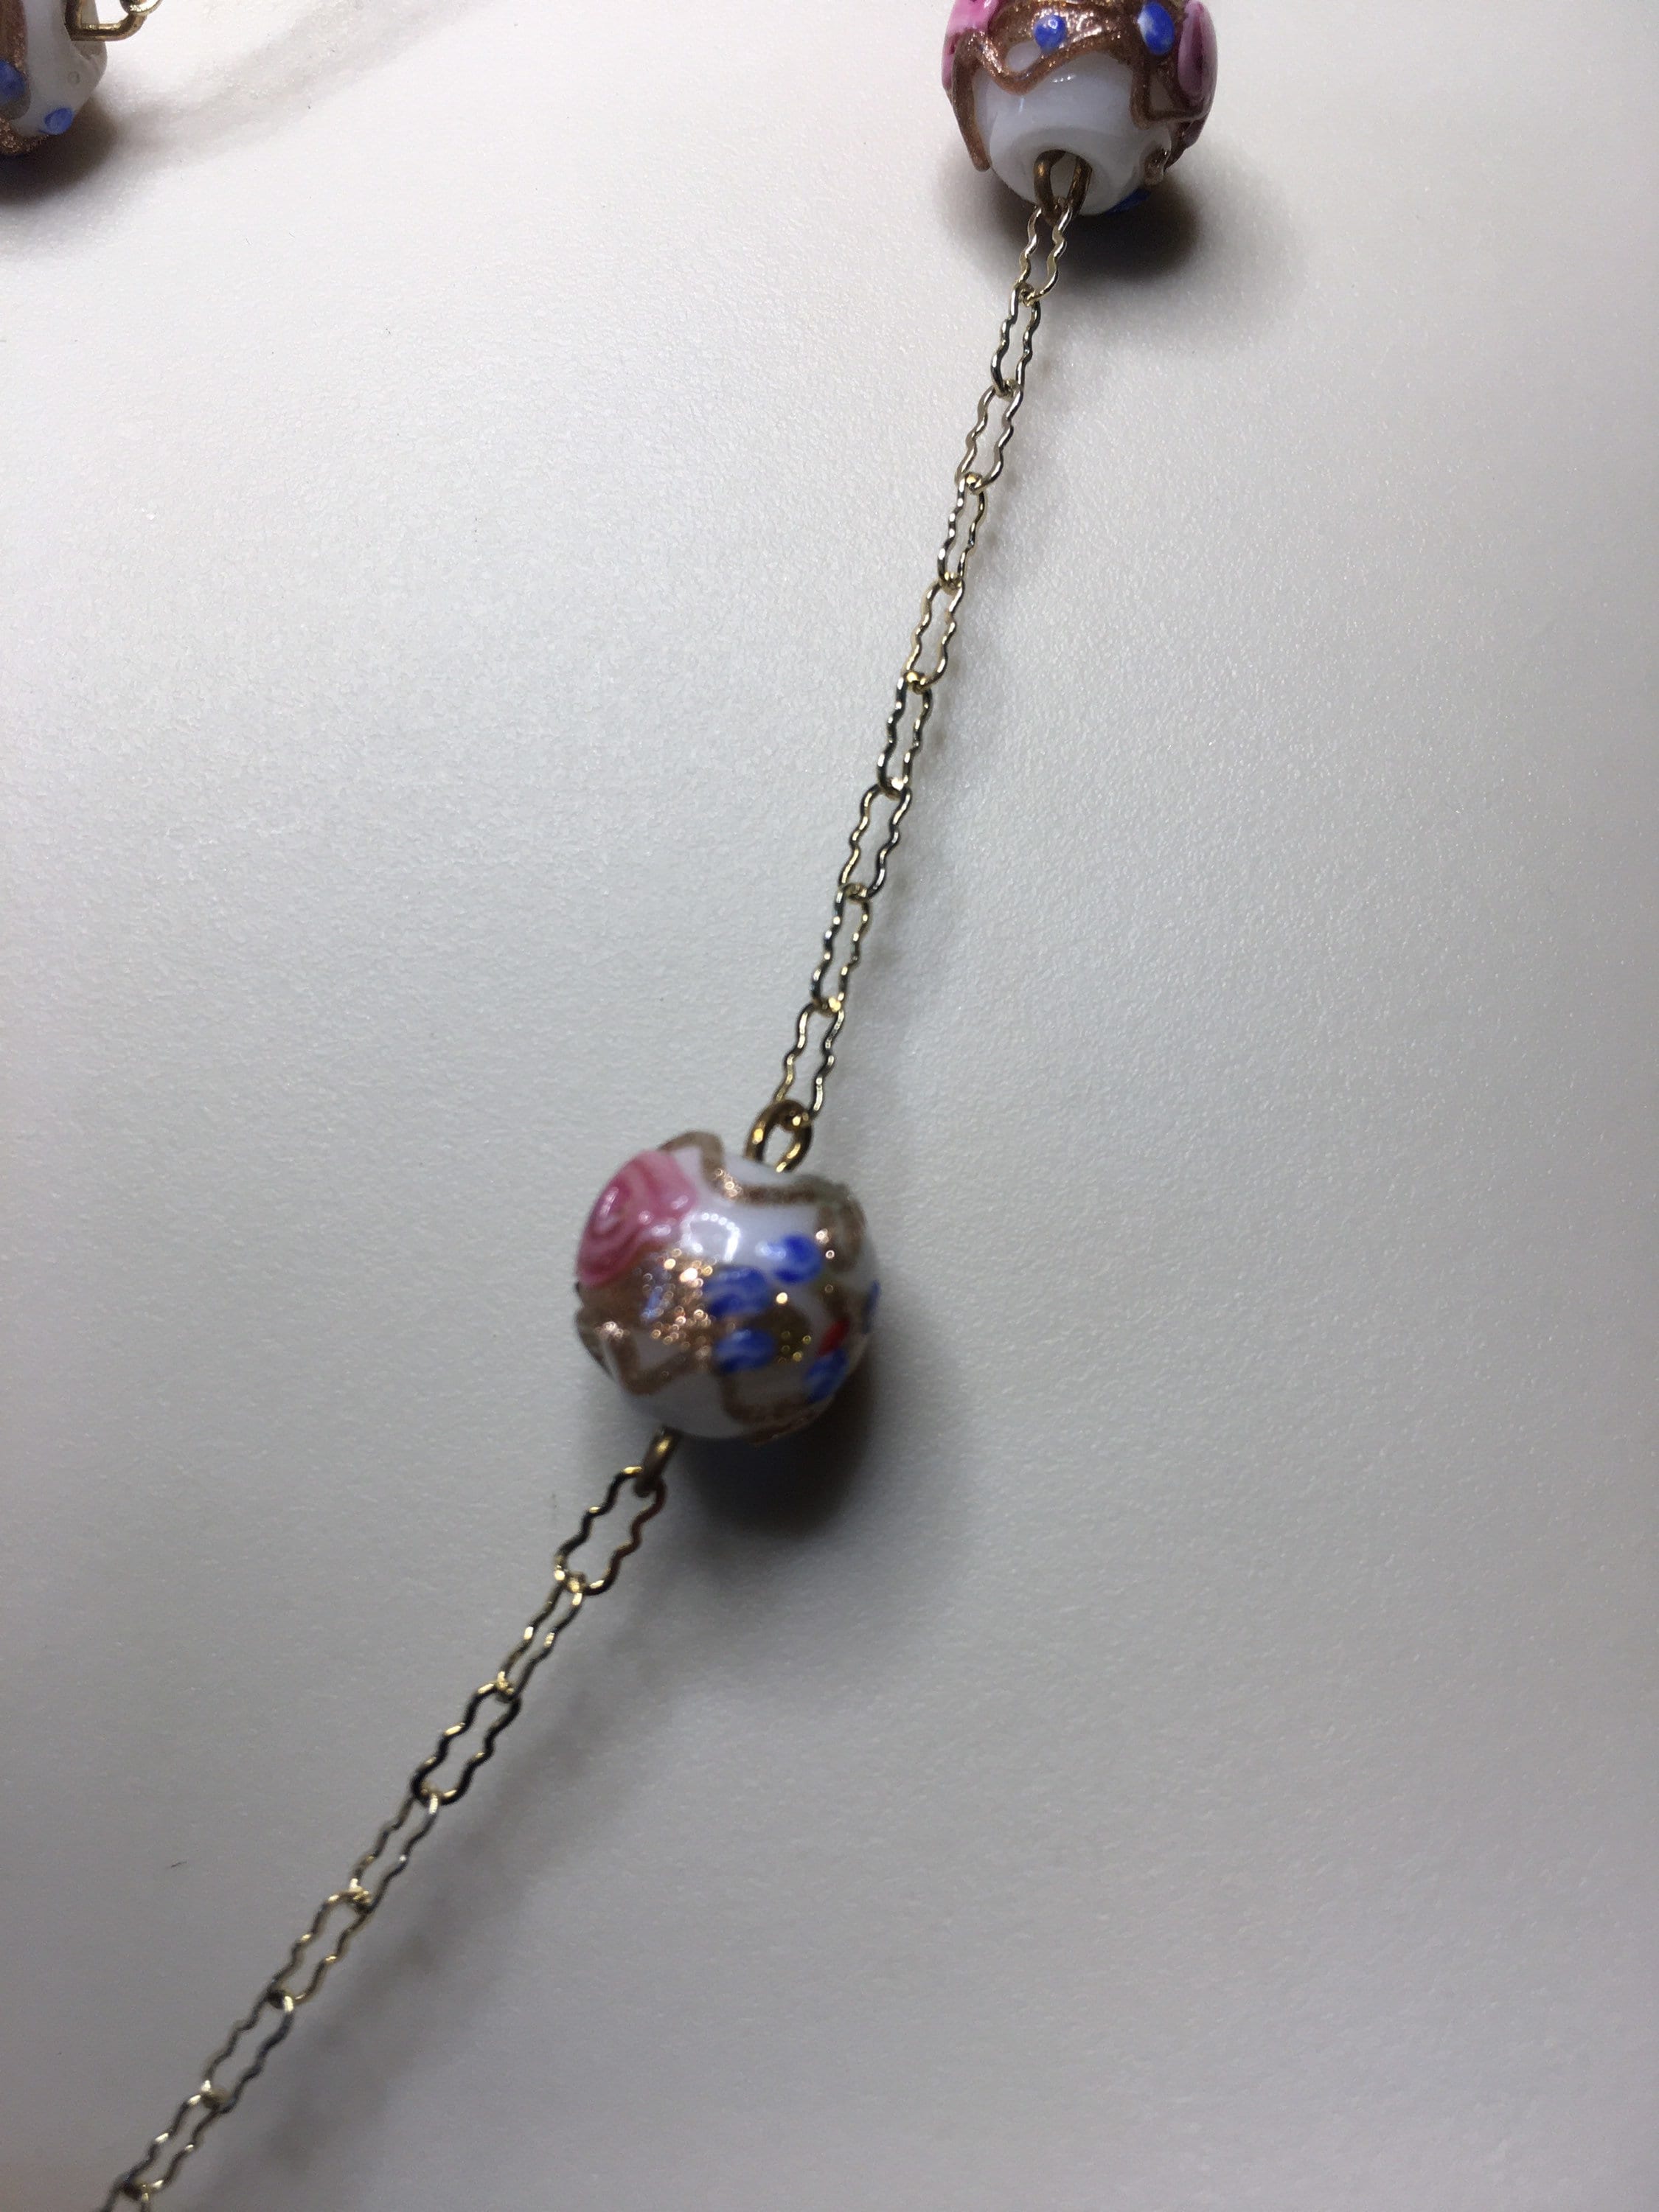 Murano beads - Wikipedia